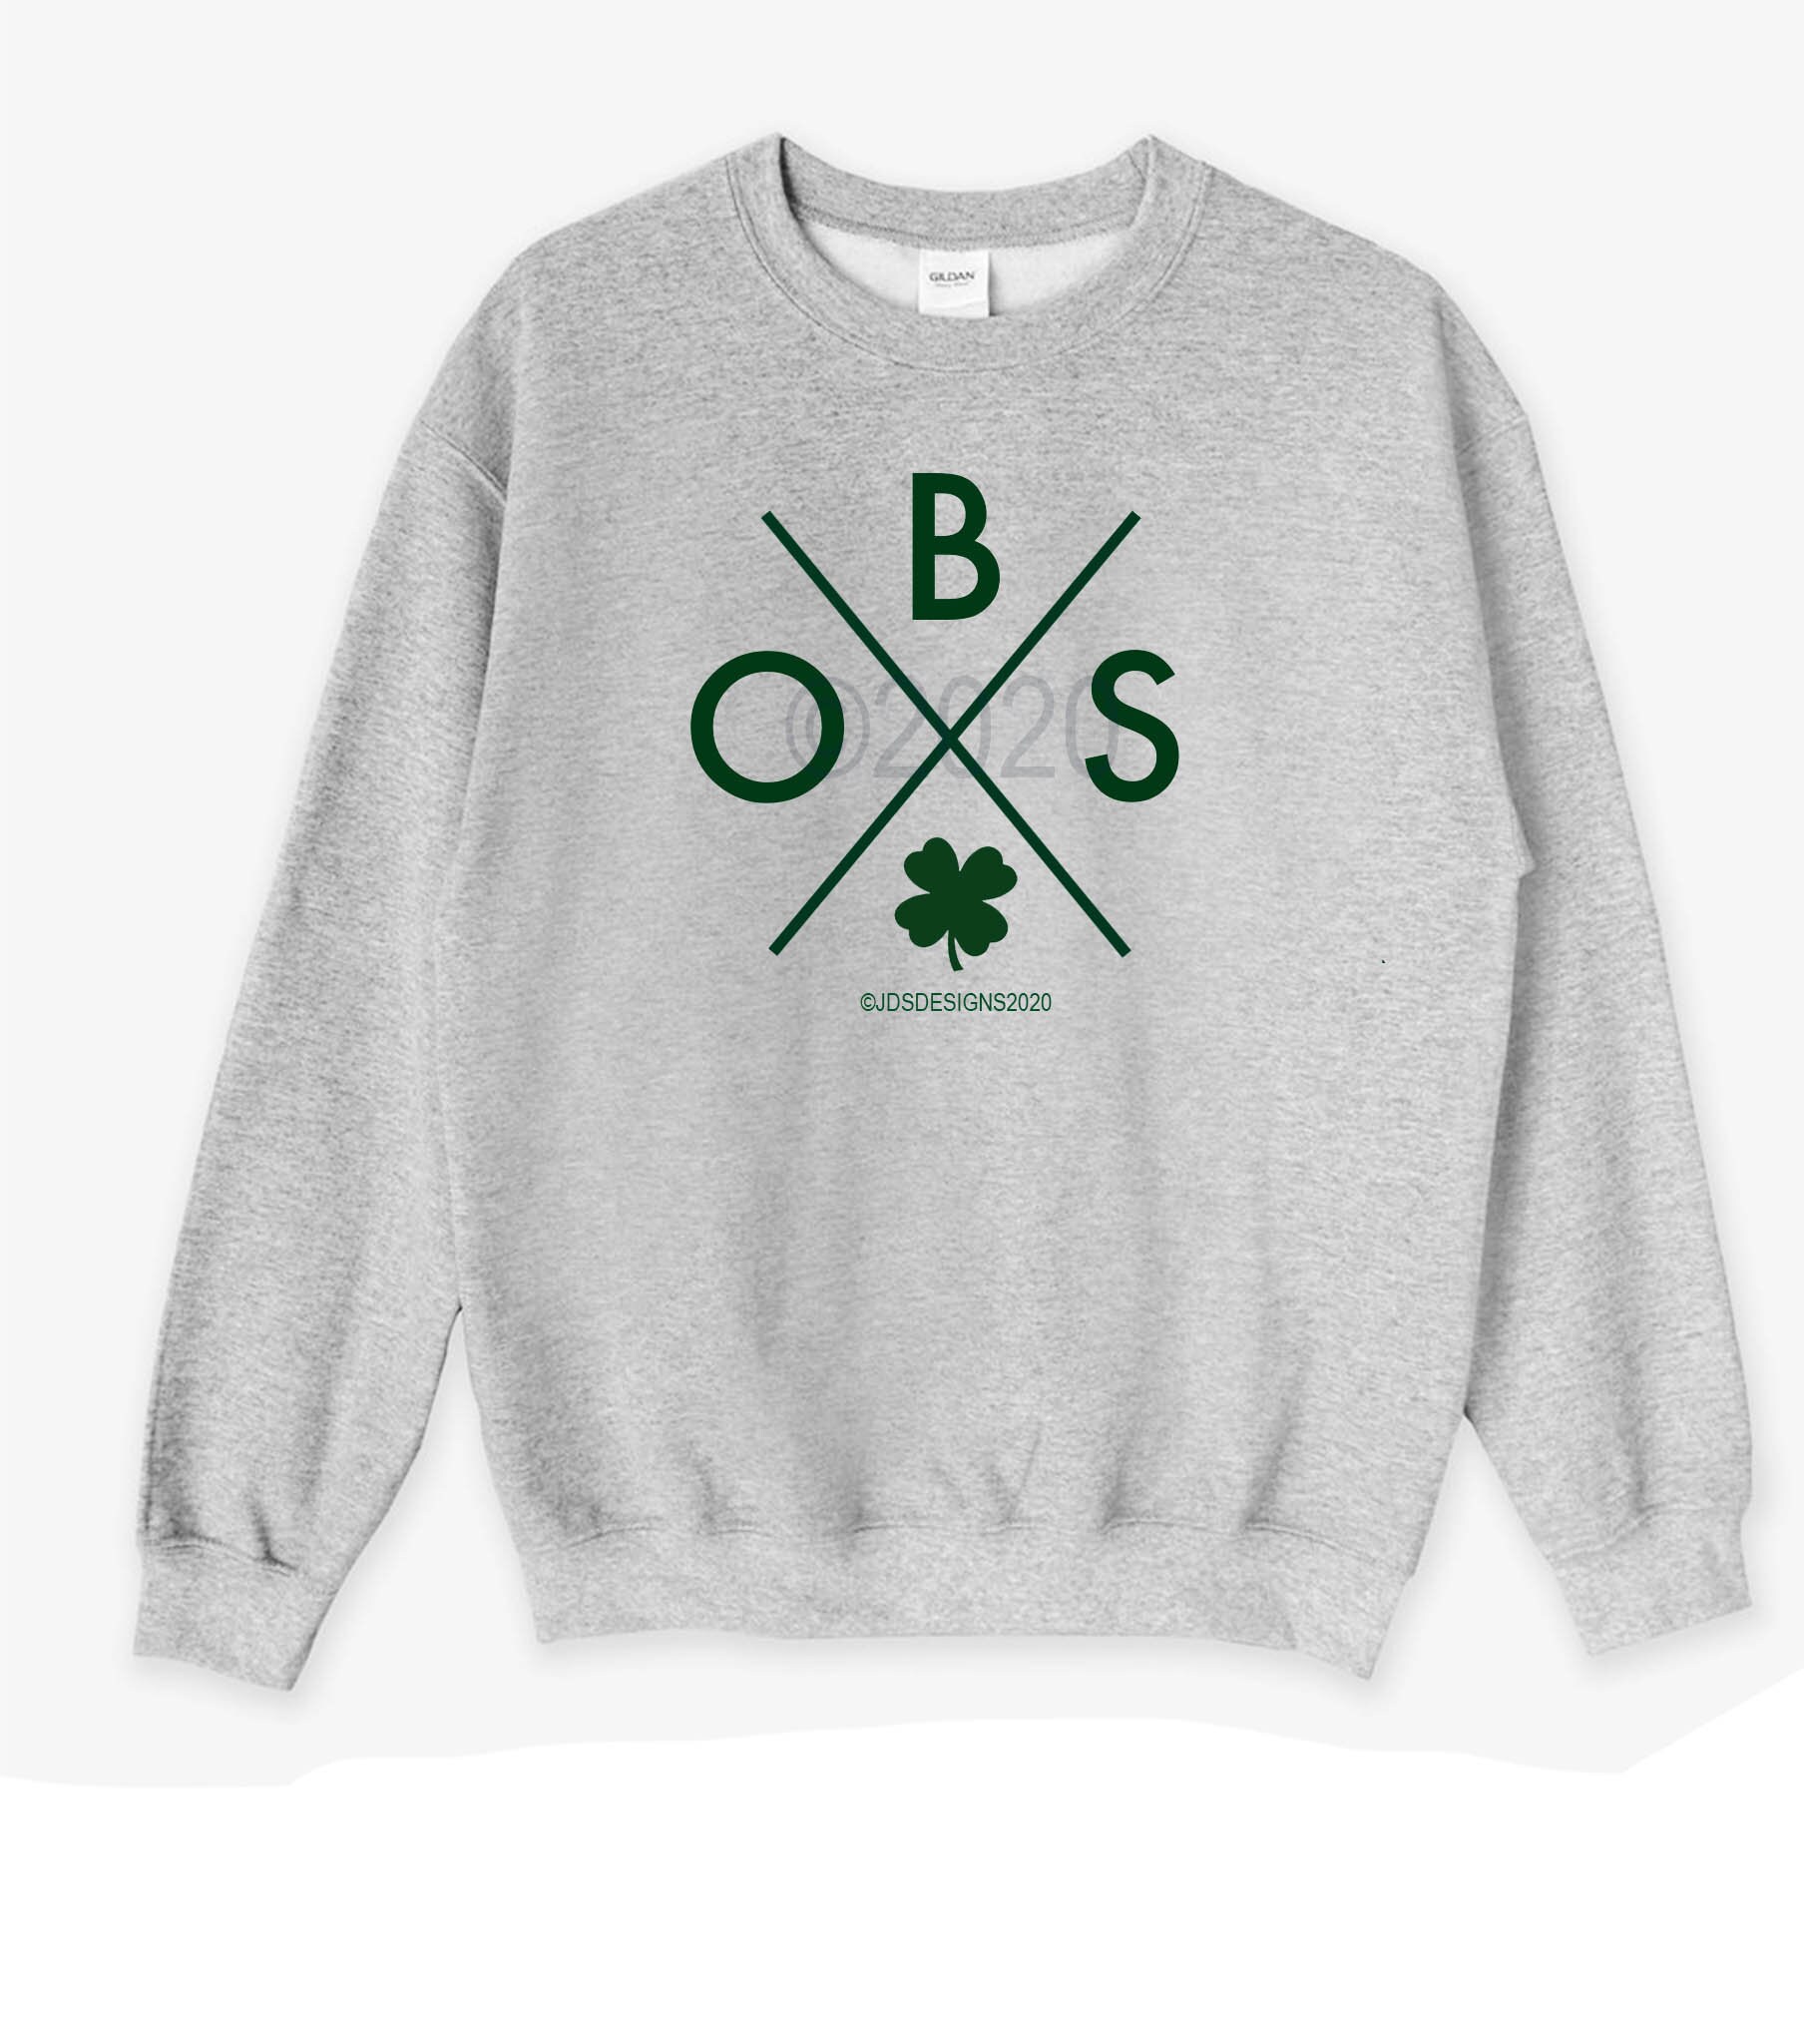 CustomCat Boston Celtics Retro NBA Crewneck Sweatshirt Irish Green / 4XL